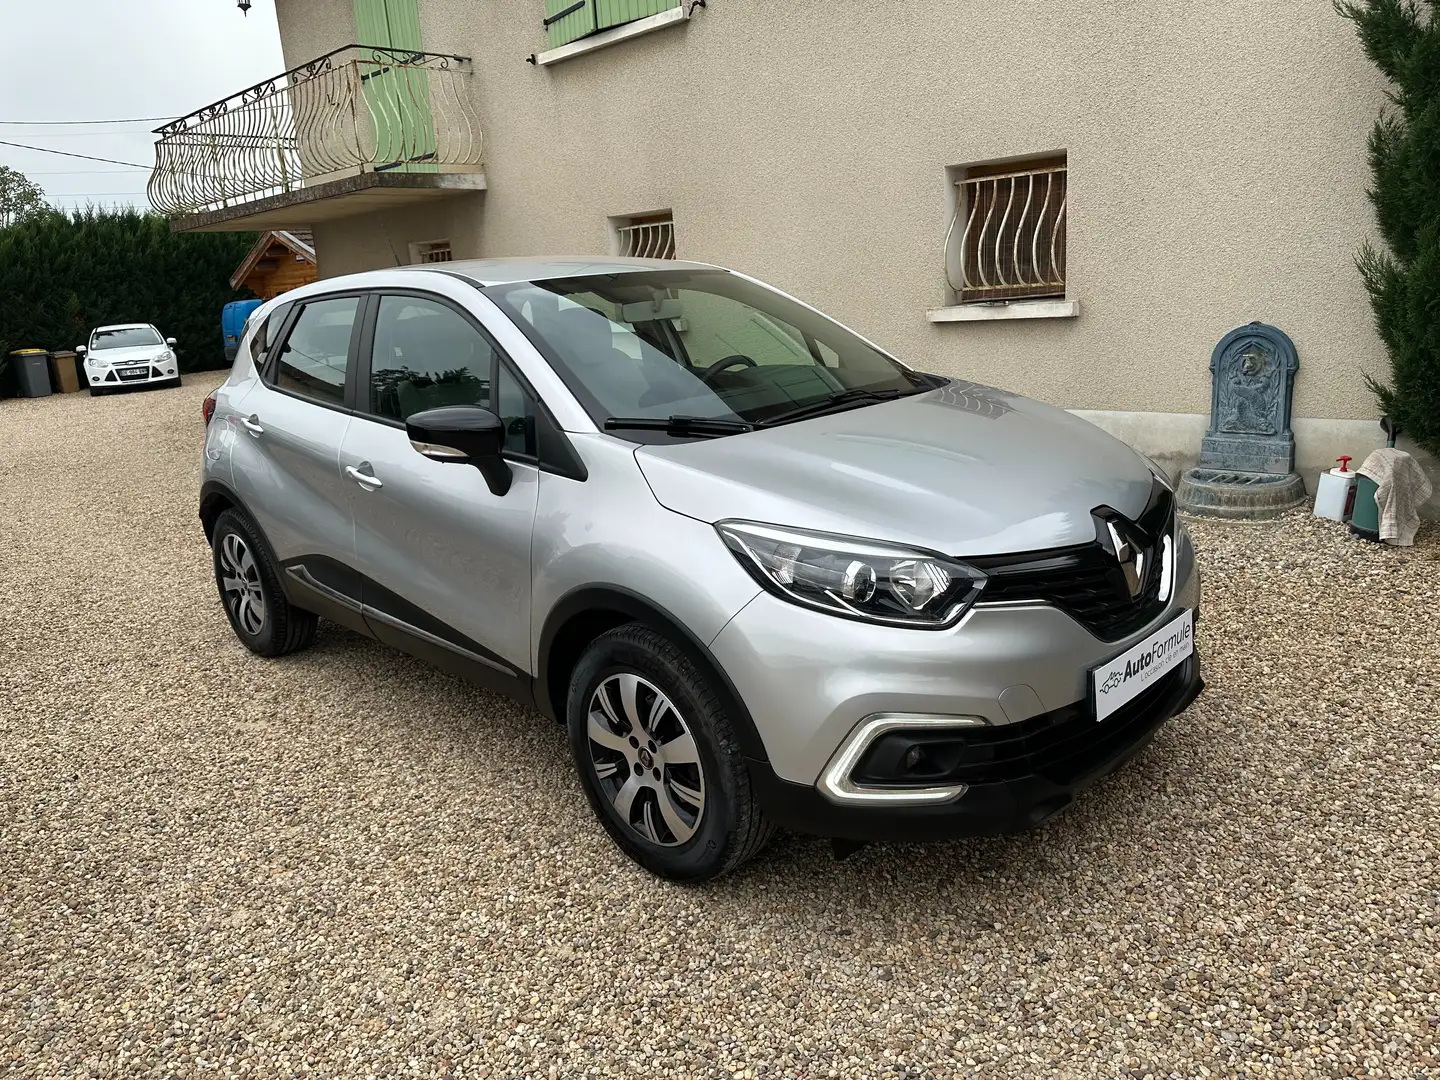 Renault Captur 1.5 dCi 90ch Business (GPS + radars +...) 2019 Gris - 1